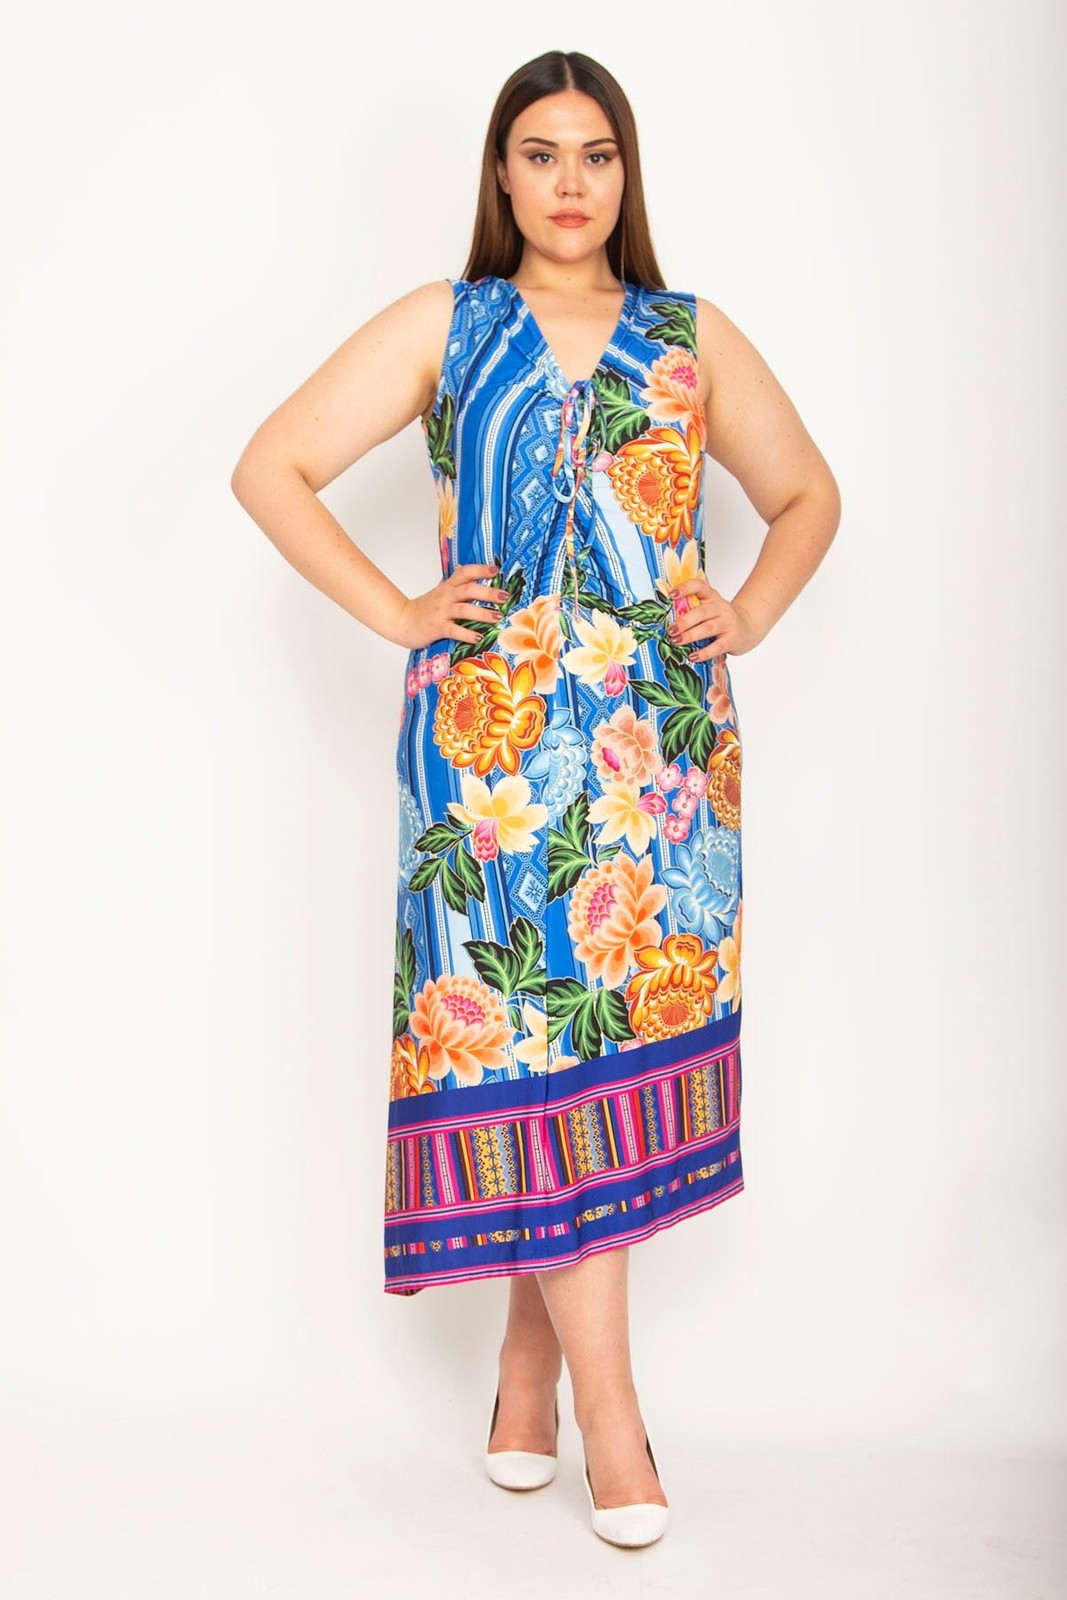 Şans Women's Plus Size Colored Gathering And Lace Detail Hem Bias Cut Colorful Dress